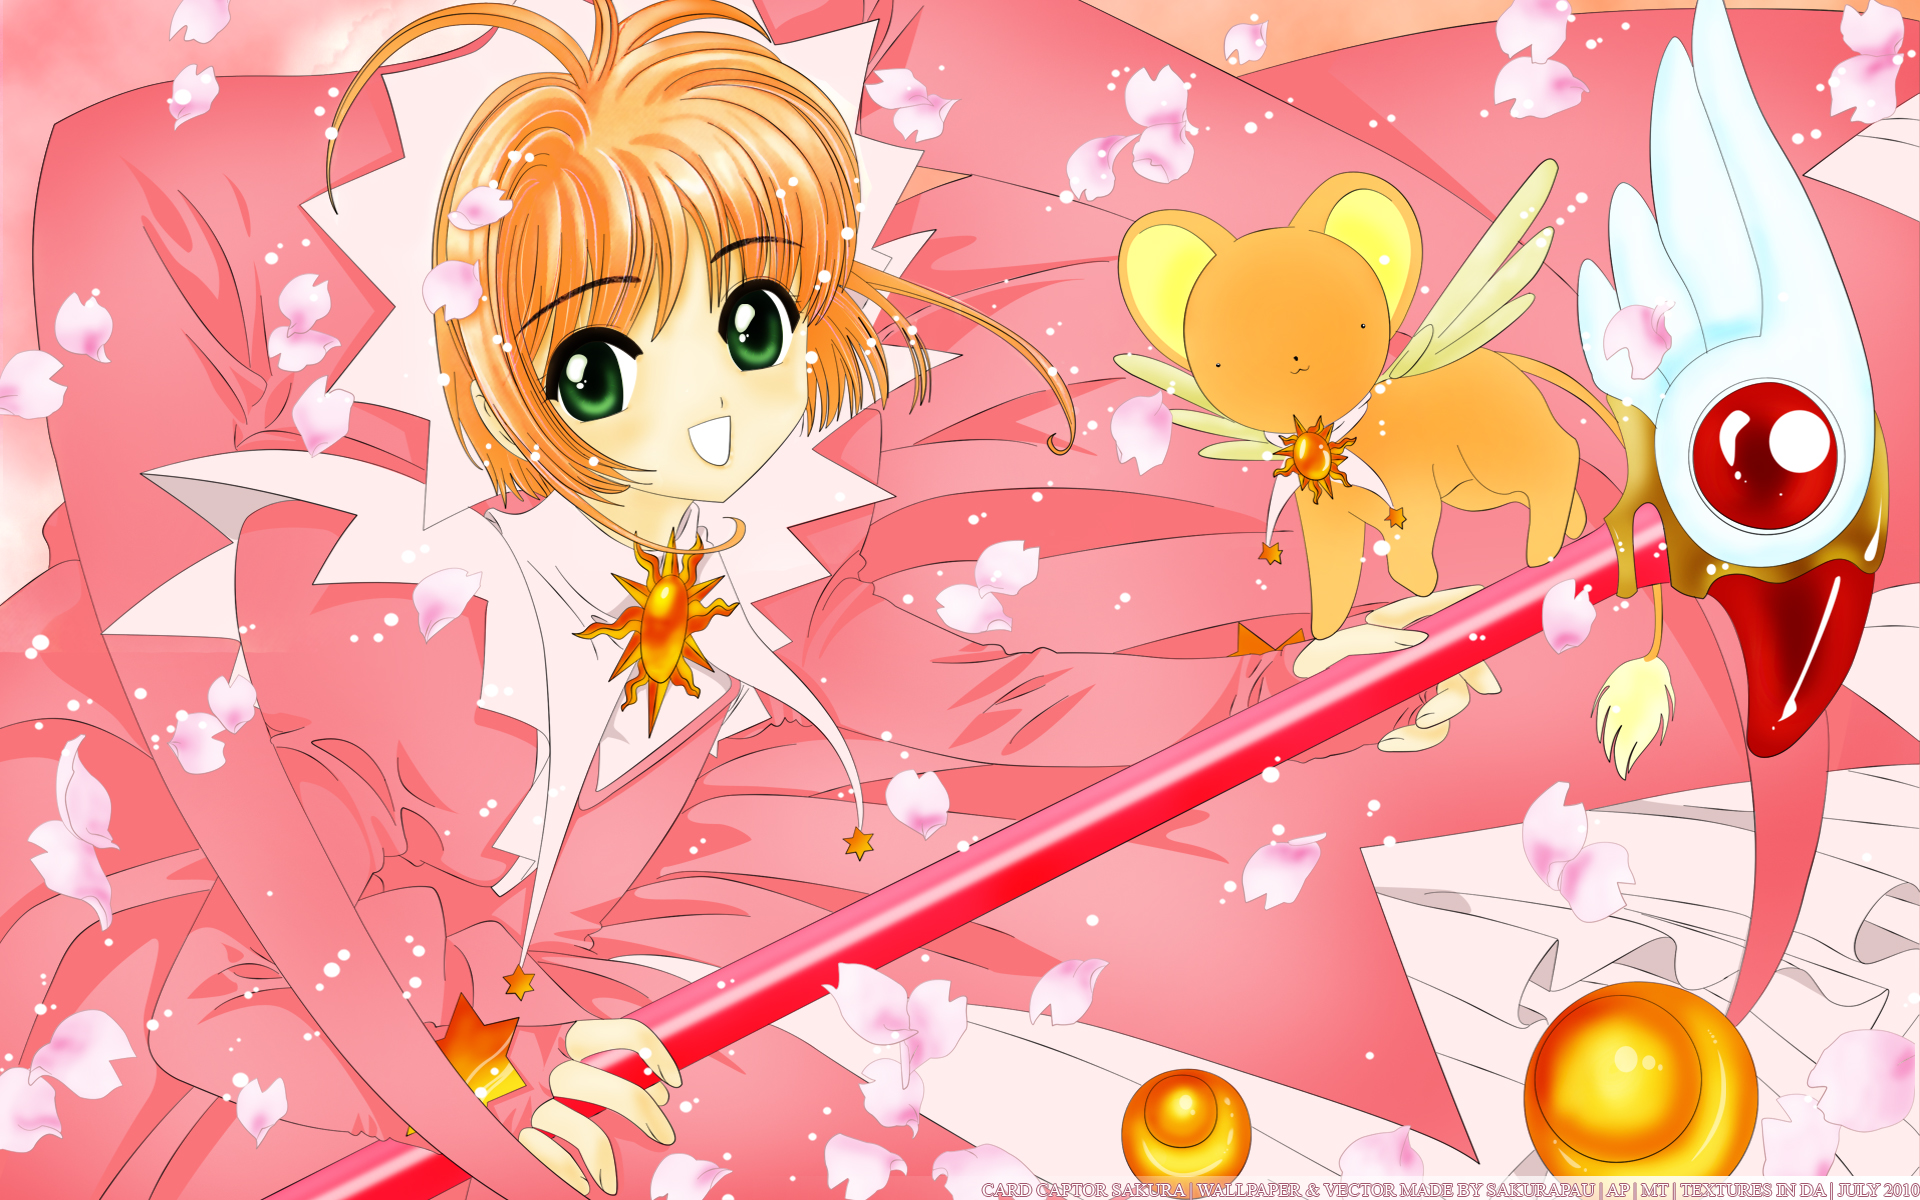 Cardcaptor Sakura Image #842230 - Zerochan Anime Image Board